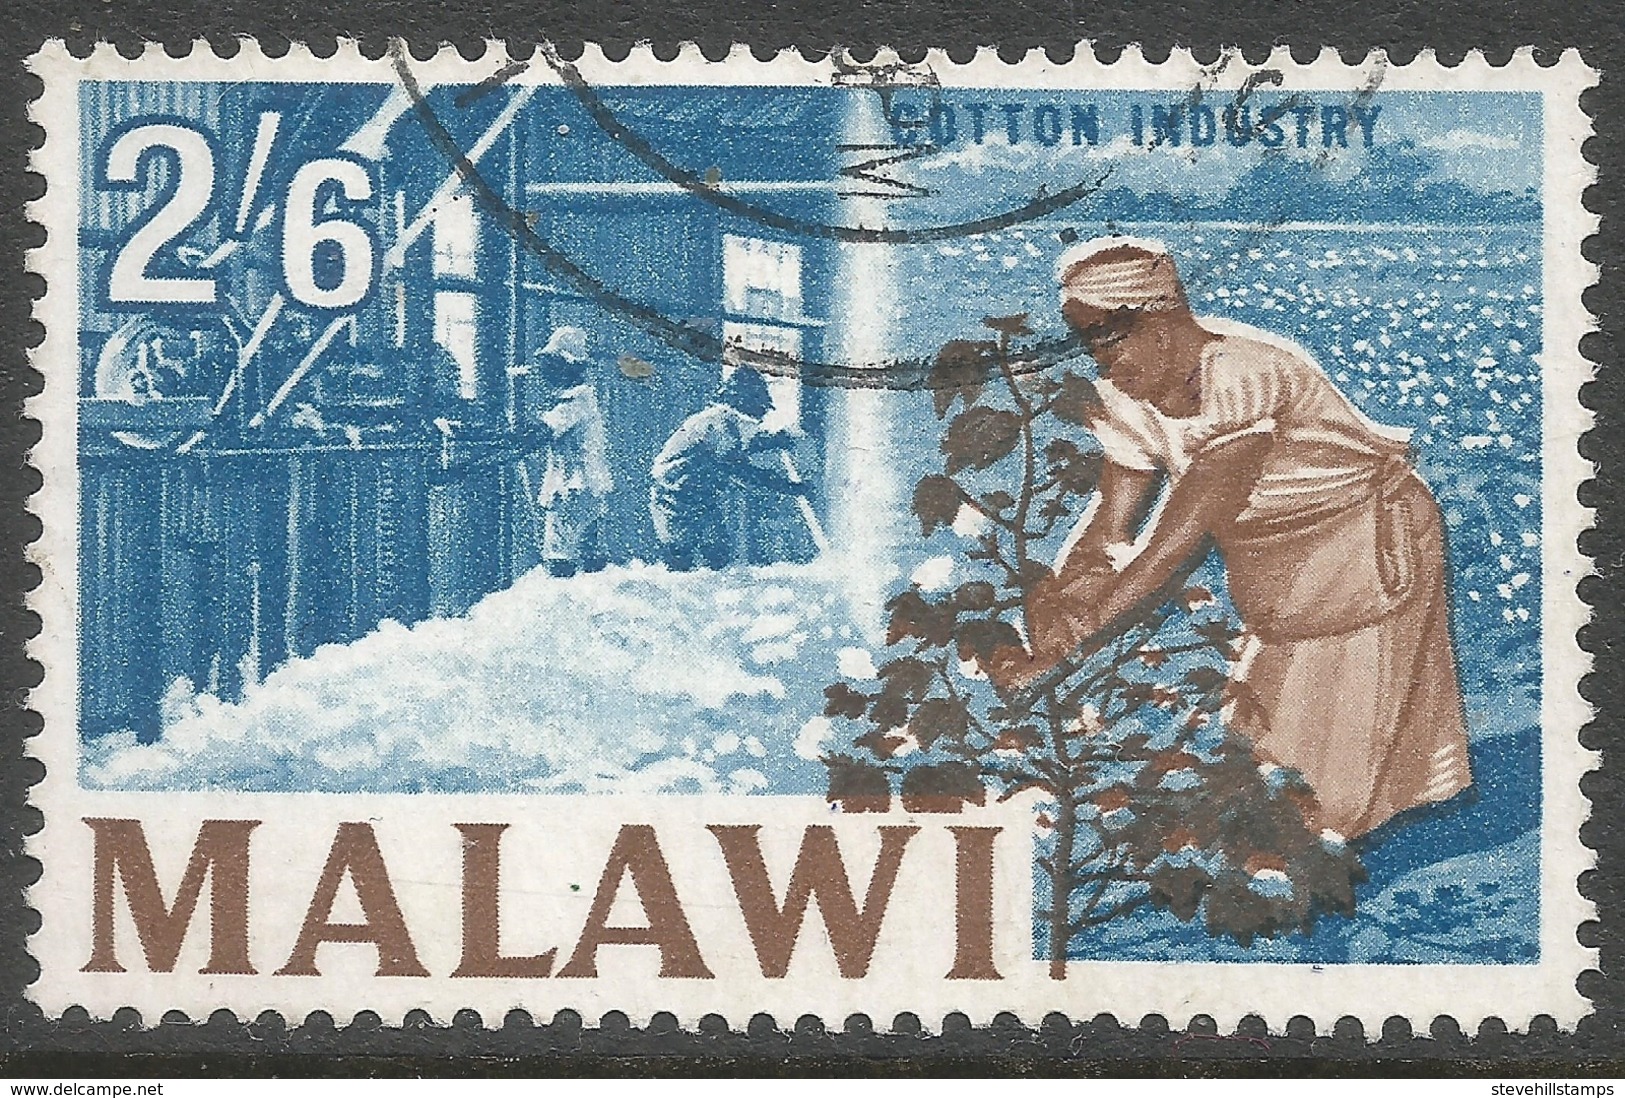 Malawi 1964 Definitives. 2/6 Used. SG 224 - Malawi (1964-...)